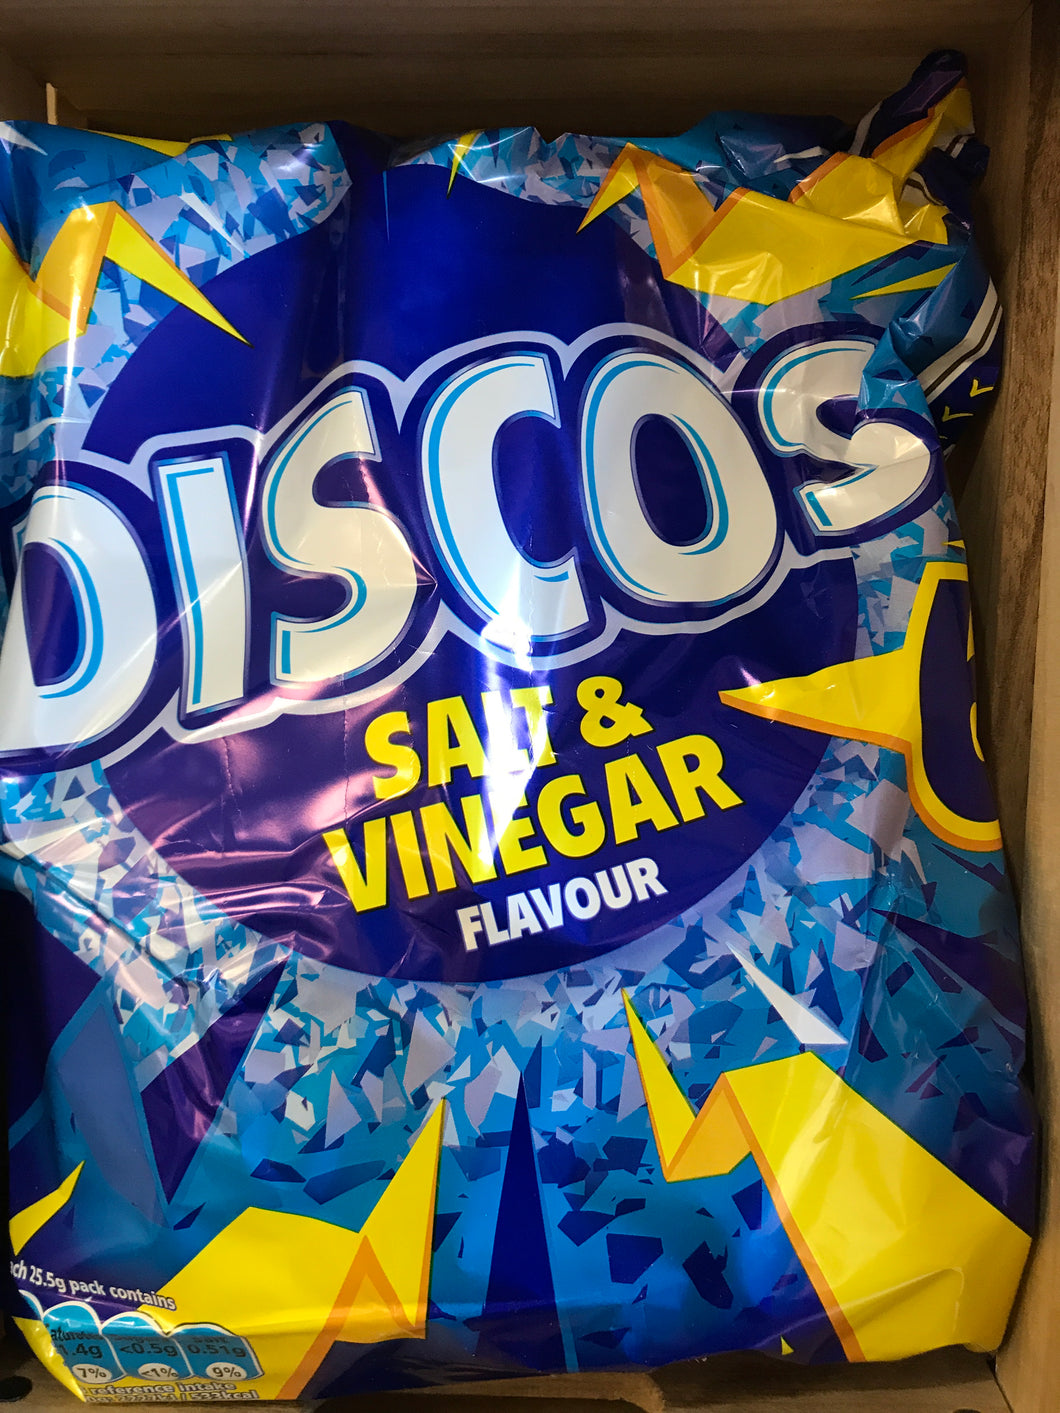 Discos Salt & Vinegar Flavour 6x25.5g